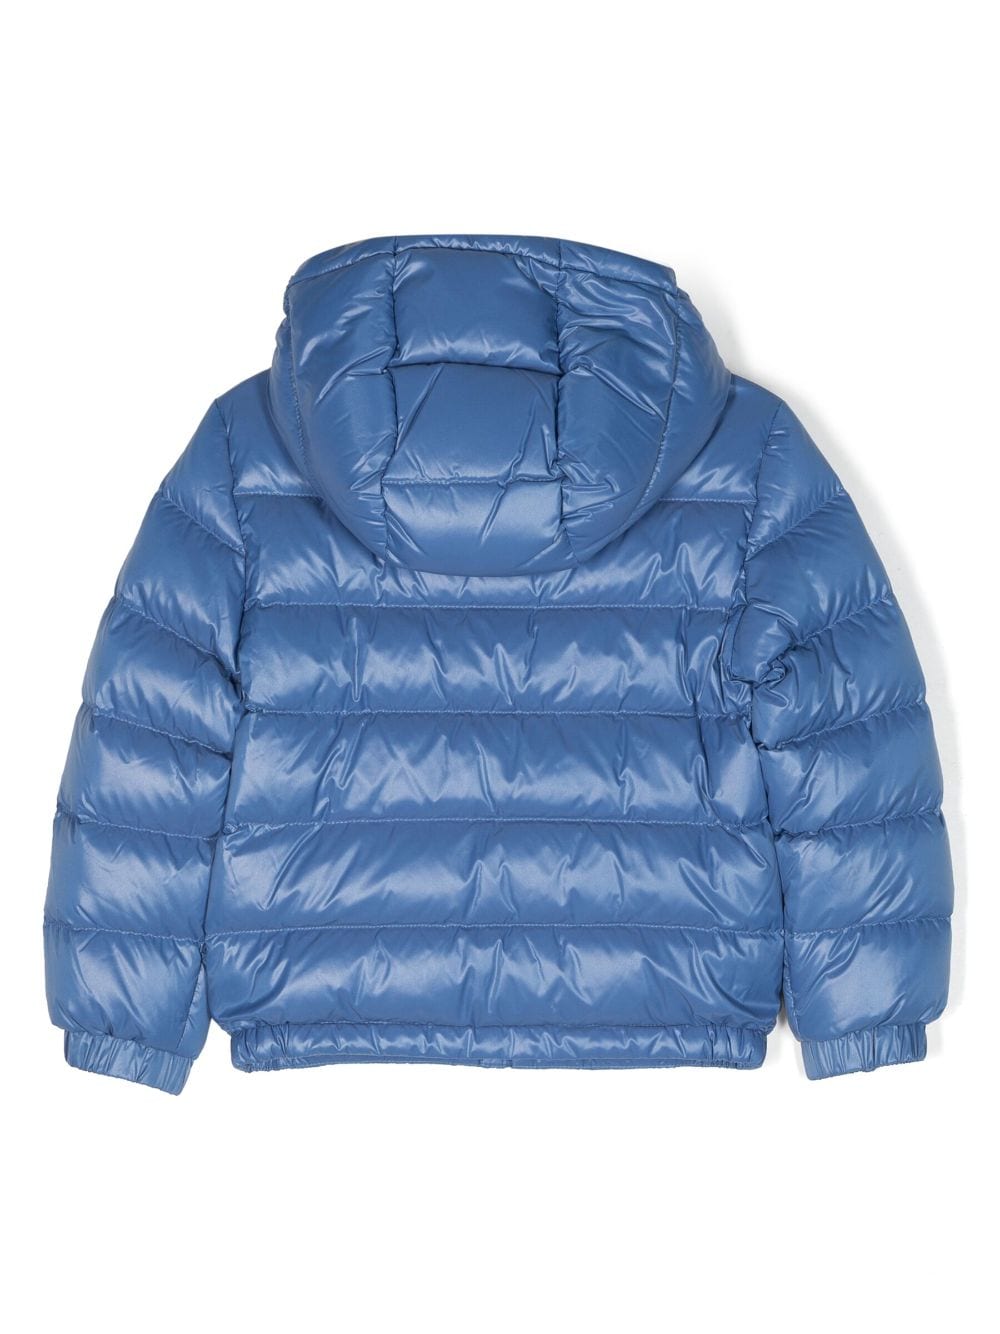 New aubert blue jacket for children